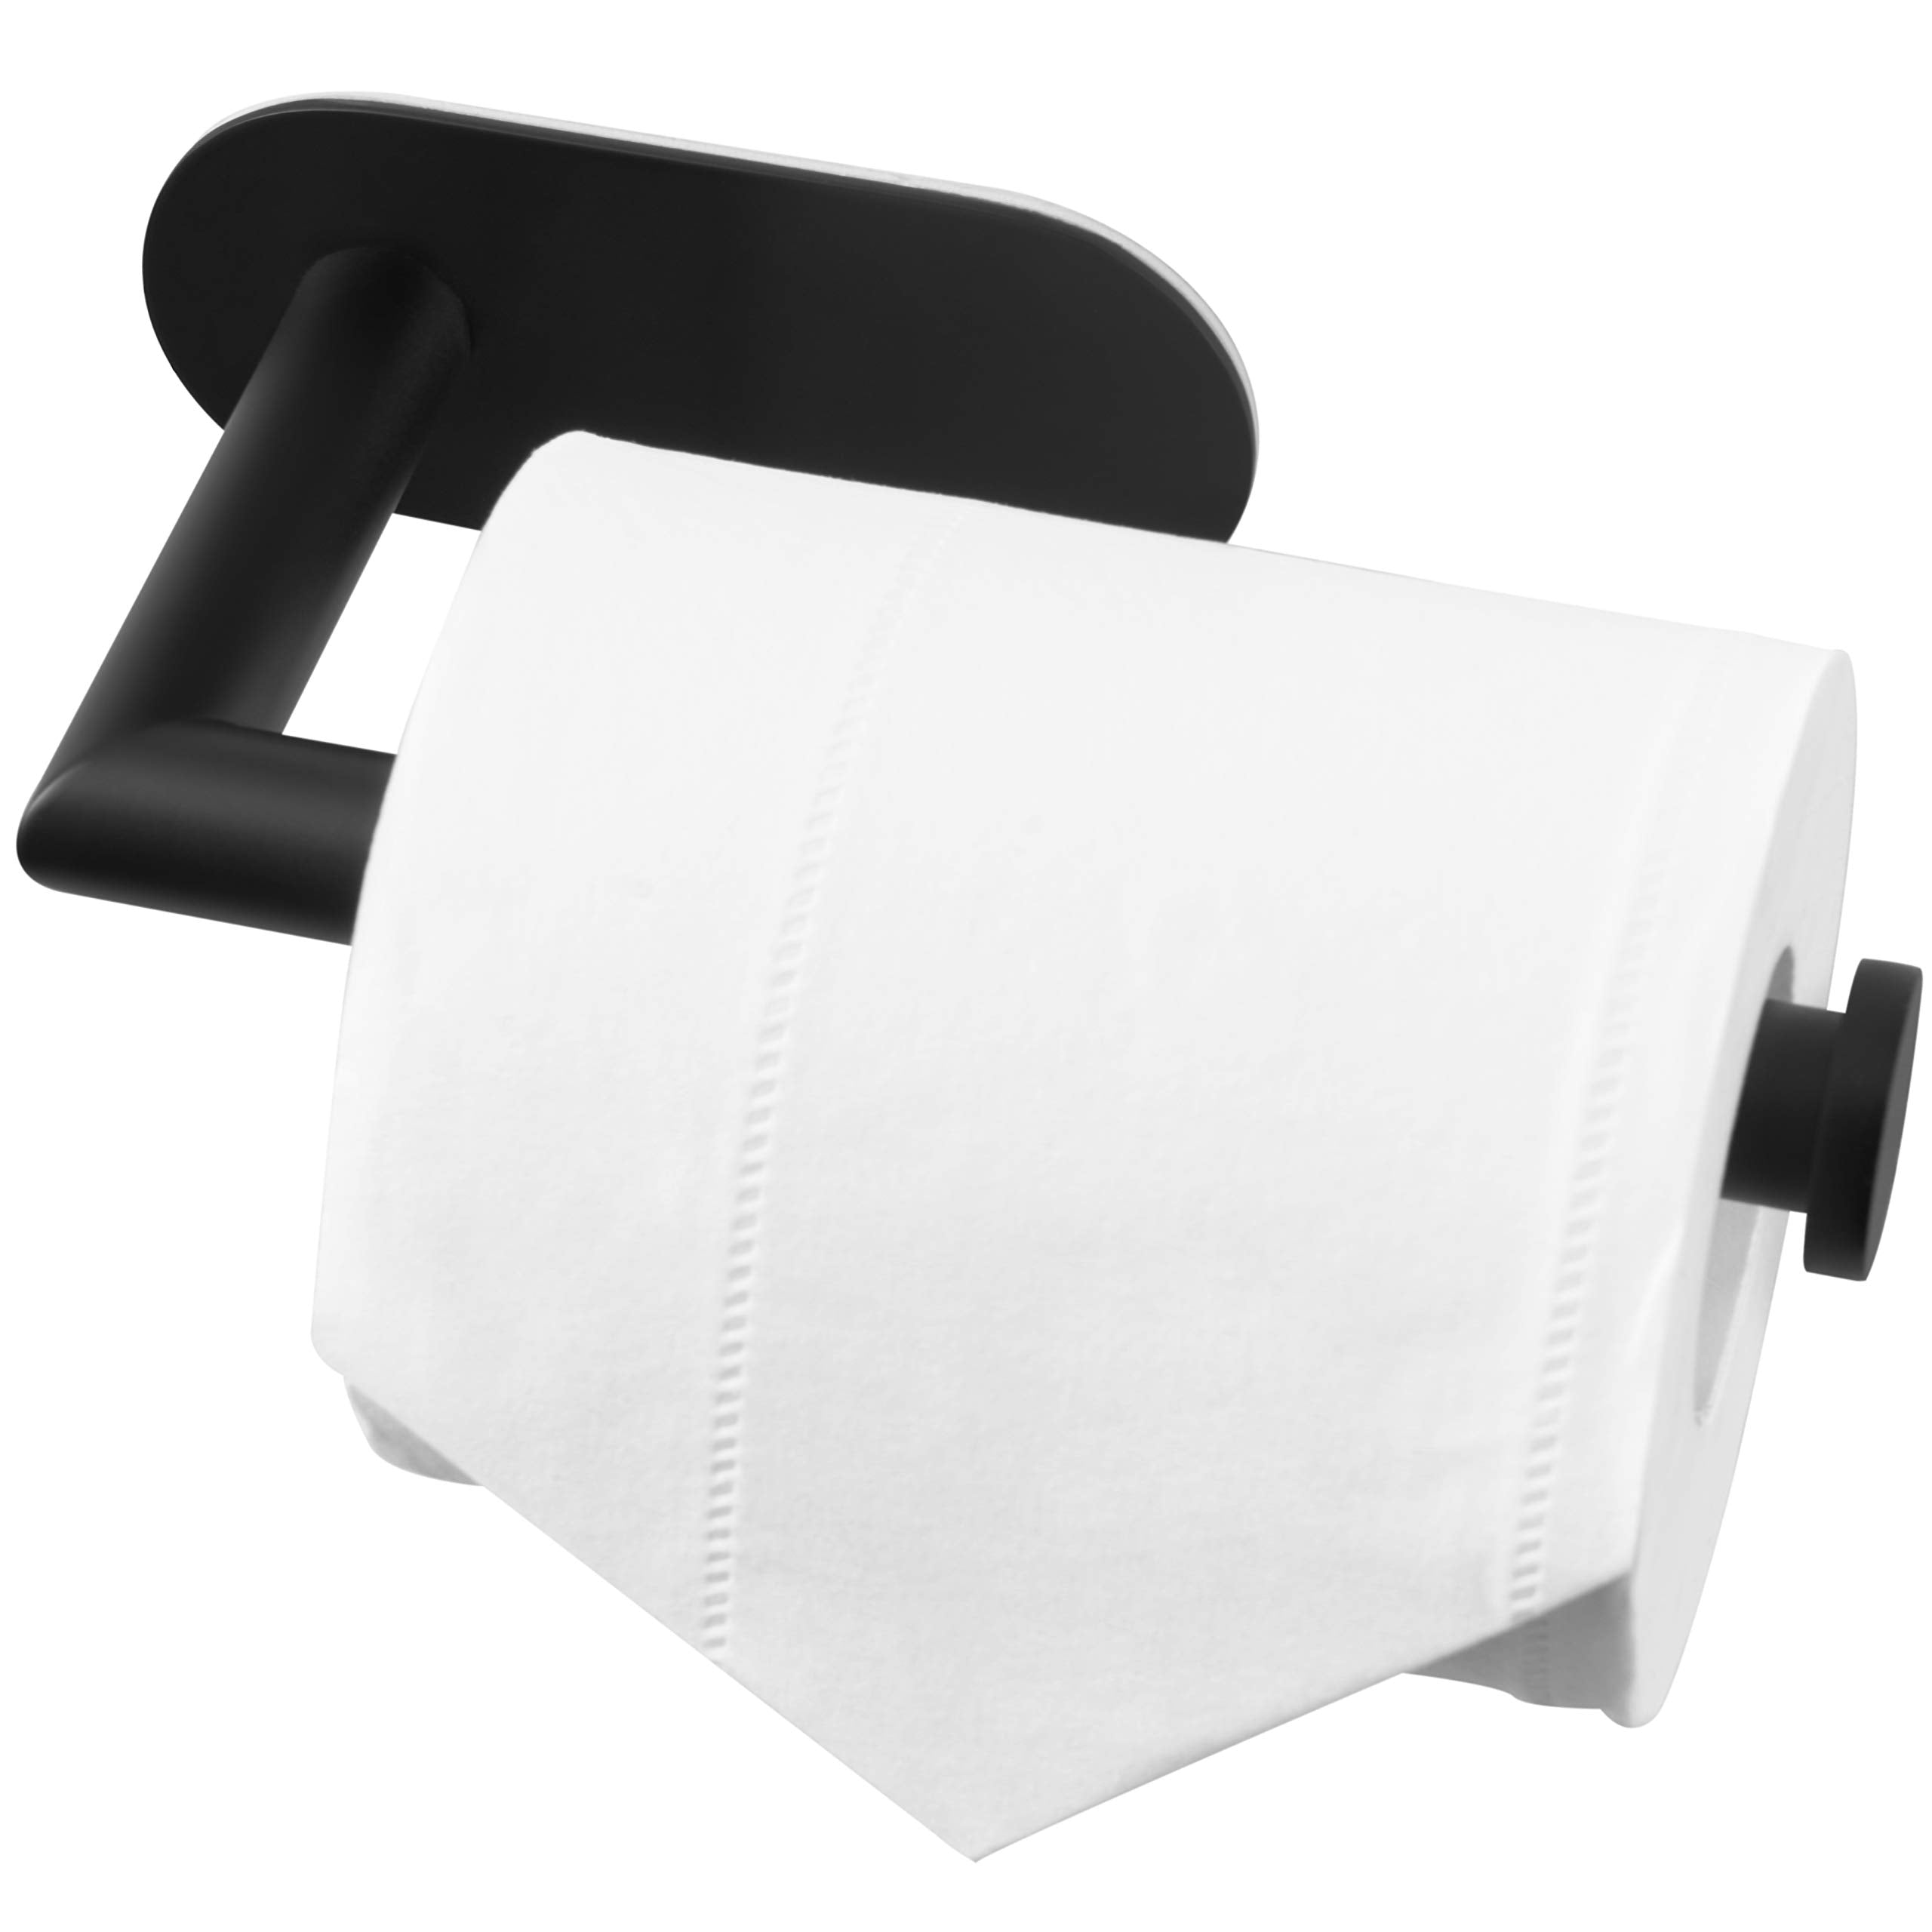 Towel Ring丨Brushed Nickel Towel Ring for Bathroom丨Modern Simple